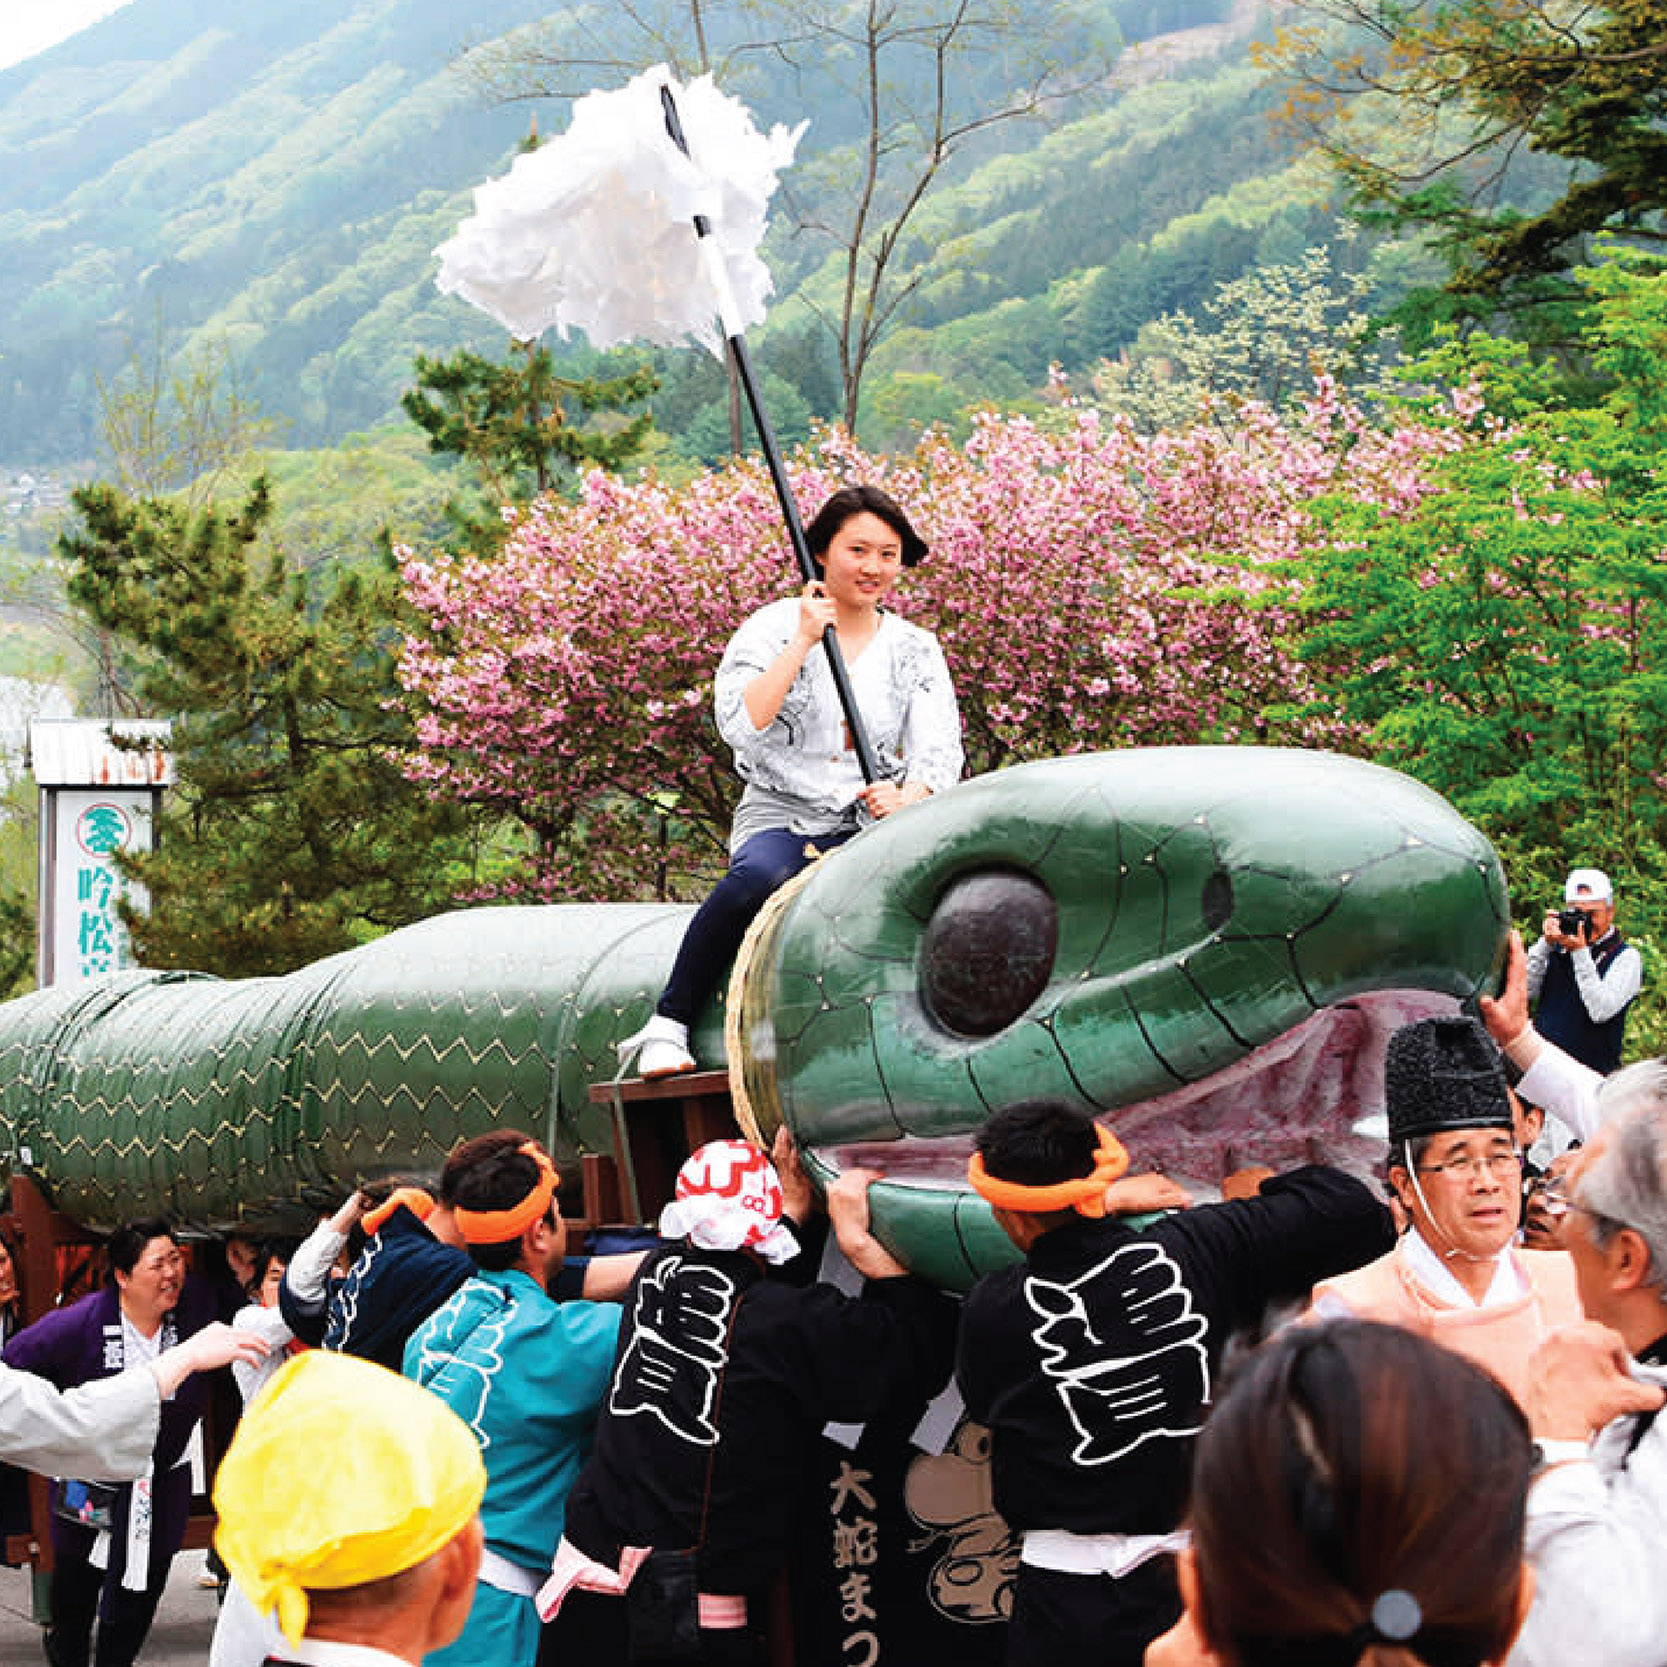 เทศกาลงูใหญ่แห่งโออิงามิ ออนเซ็น (Oigami Onsen Daija Festival) เทศกาลขอบคุณงูยักษ์ของชาวญี่ปุ่น